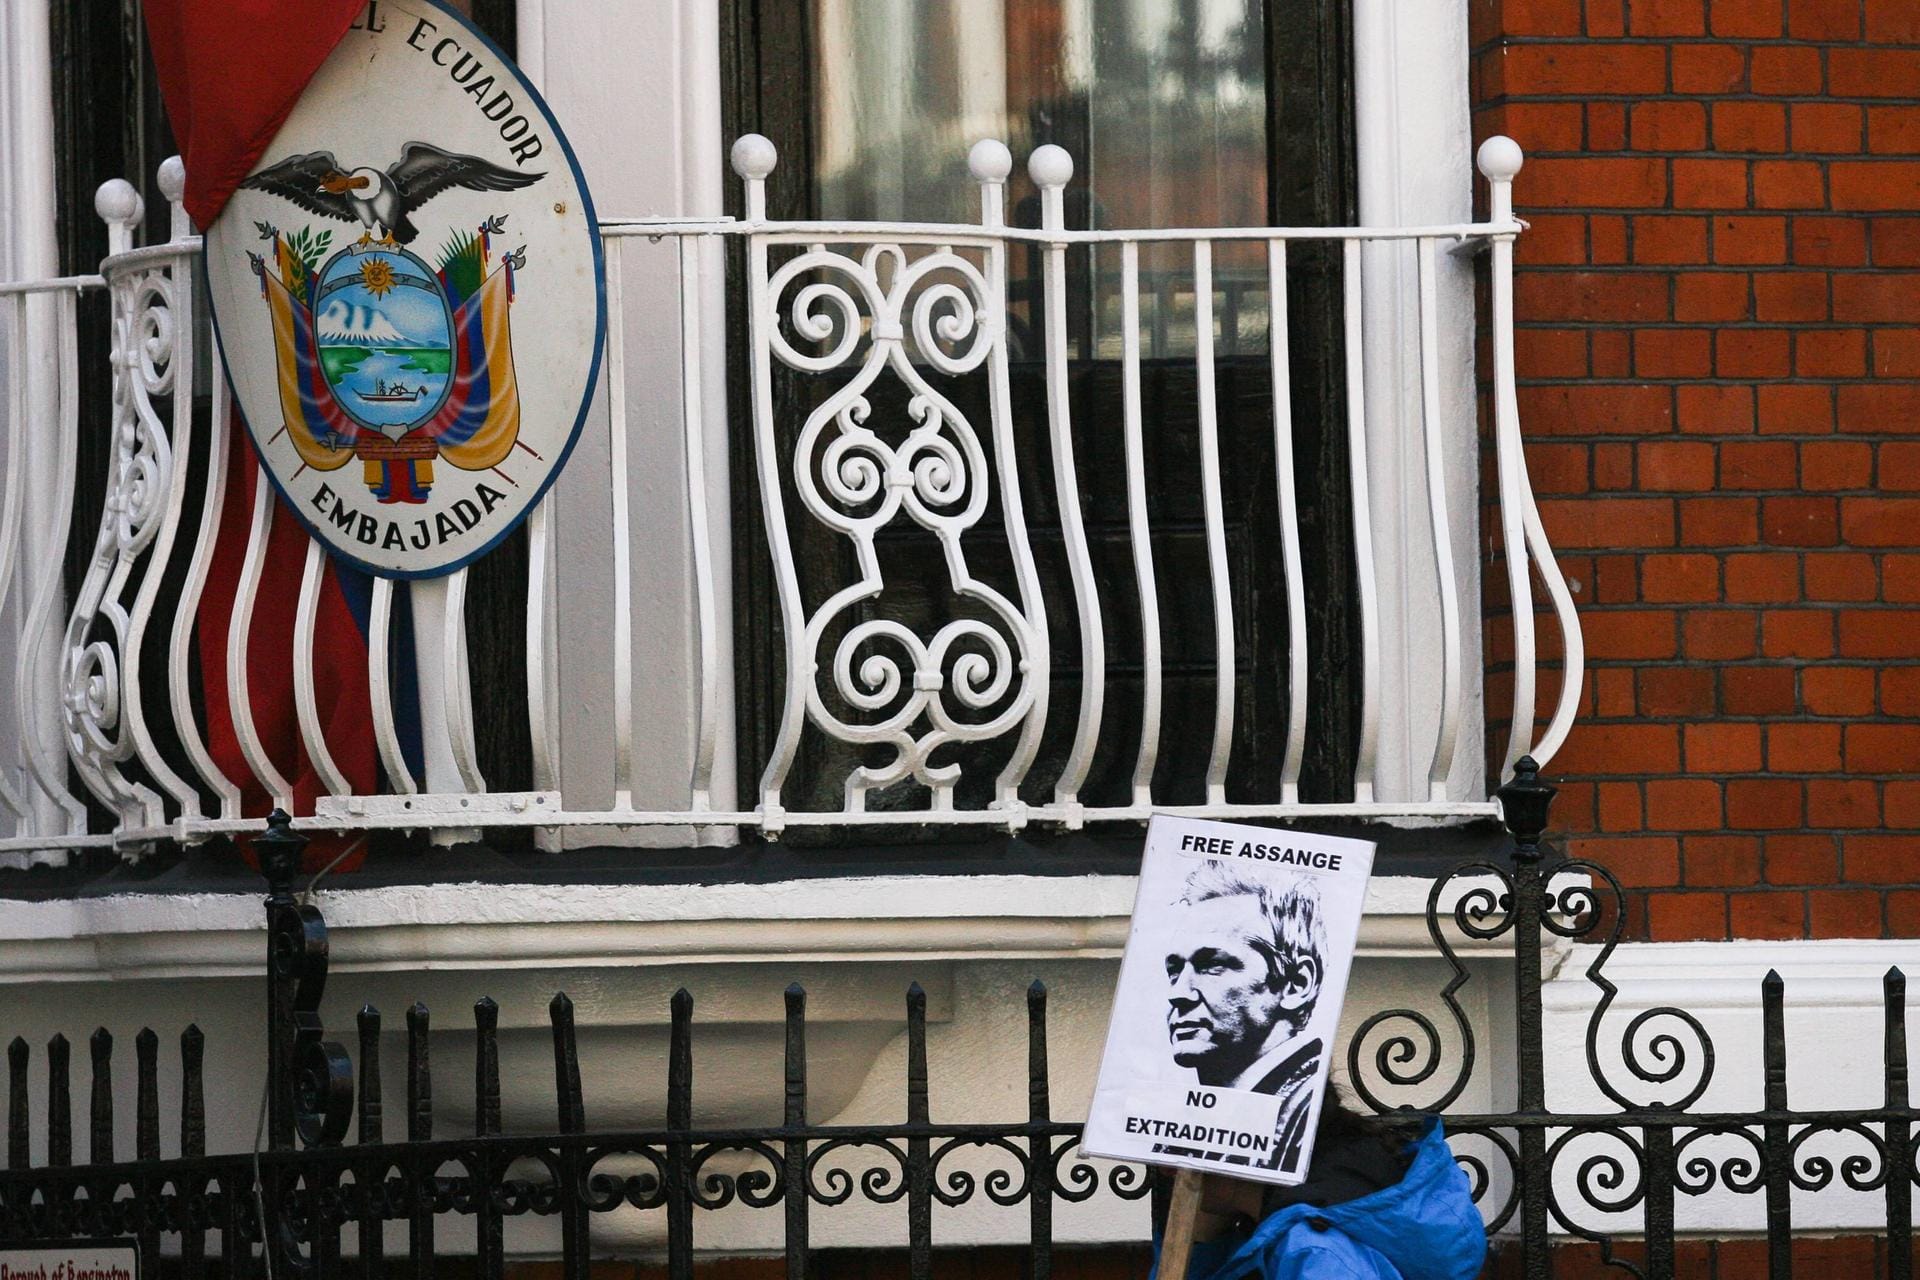 Juni 2012: Julian Assange flüchtet in die ecuadorianische Botschaft in London und beantragt Asyl damit er nicht die USA ausgeliefert wird.